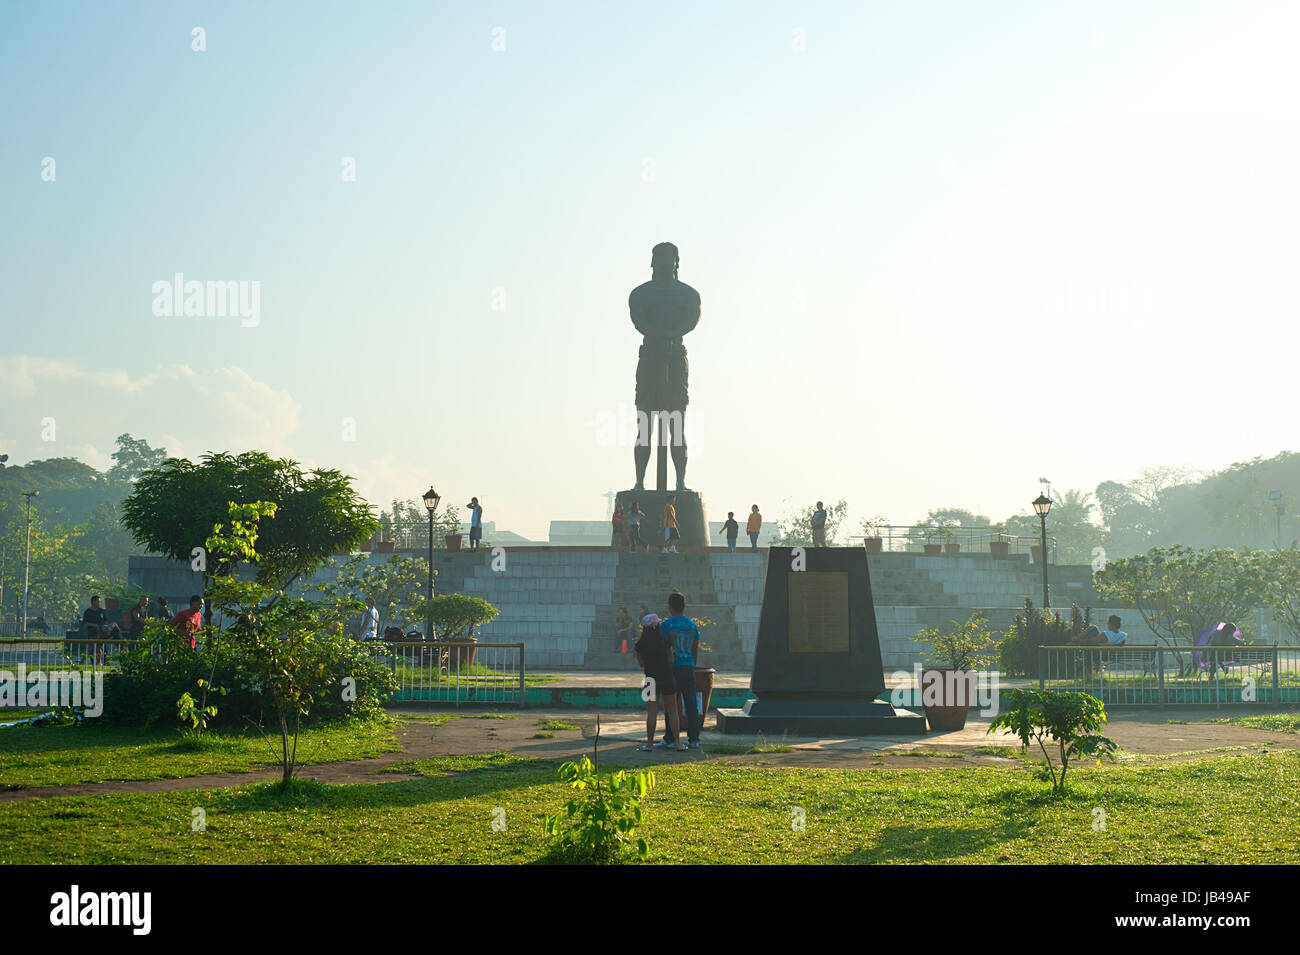 MANILA, PHILIPPINES - APRIL 01, 2012: The Statue of the Sentinel of Freedom (statue of Lapu-lapu) in Luneta park, Metro Manila, Philippines Stock Photo